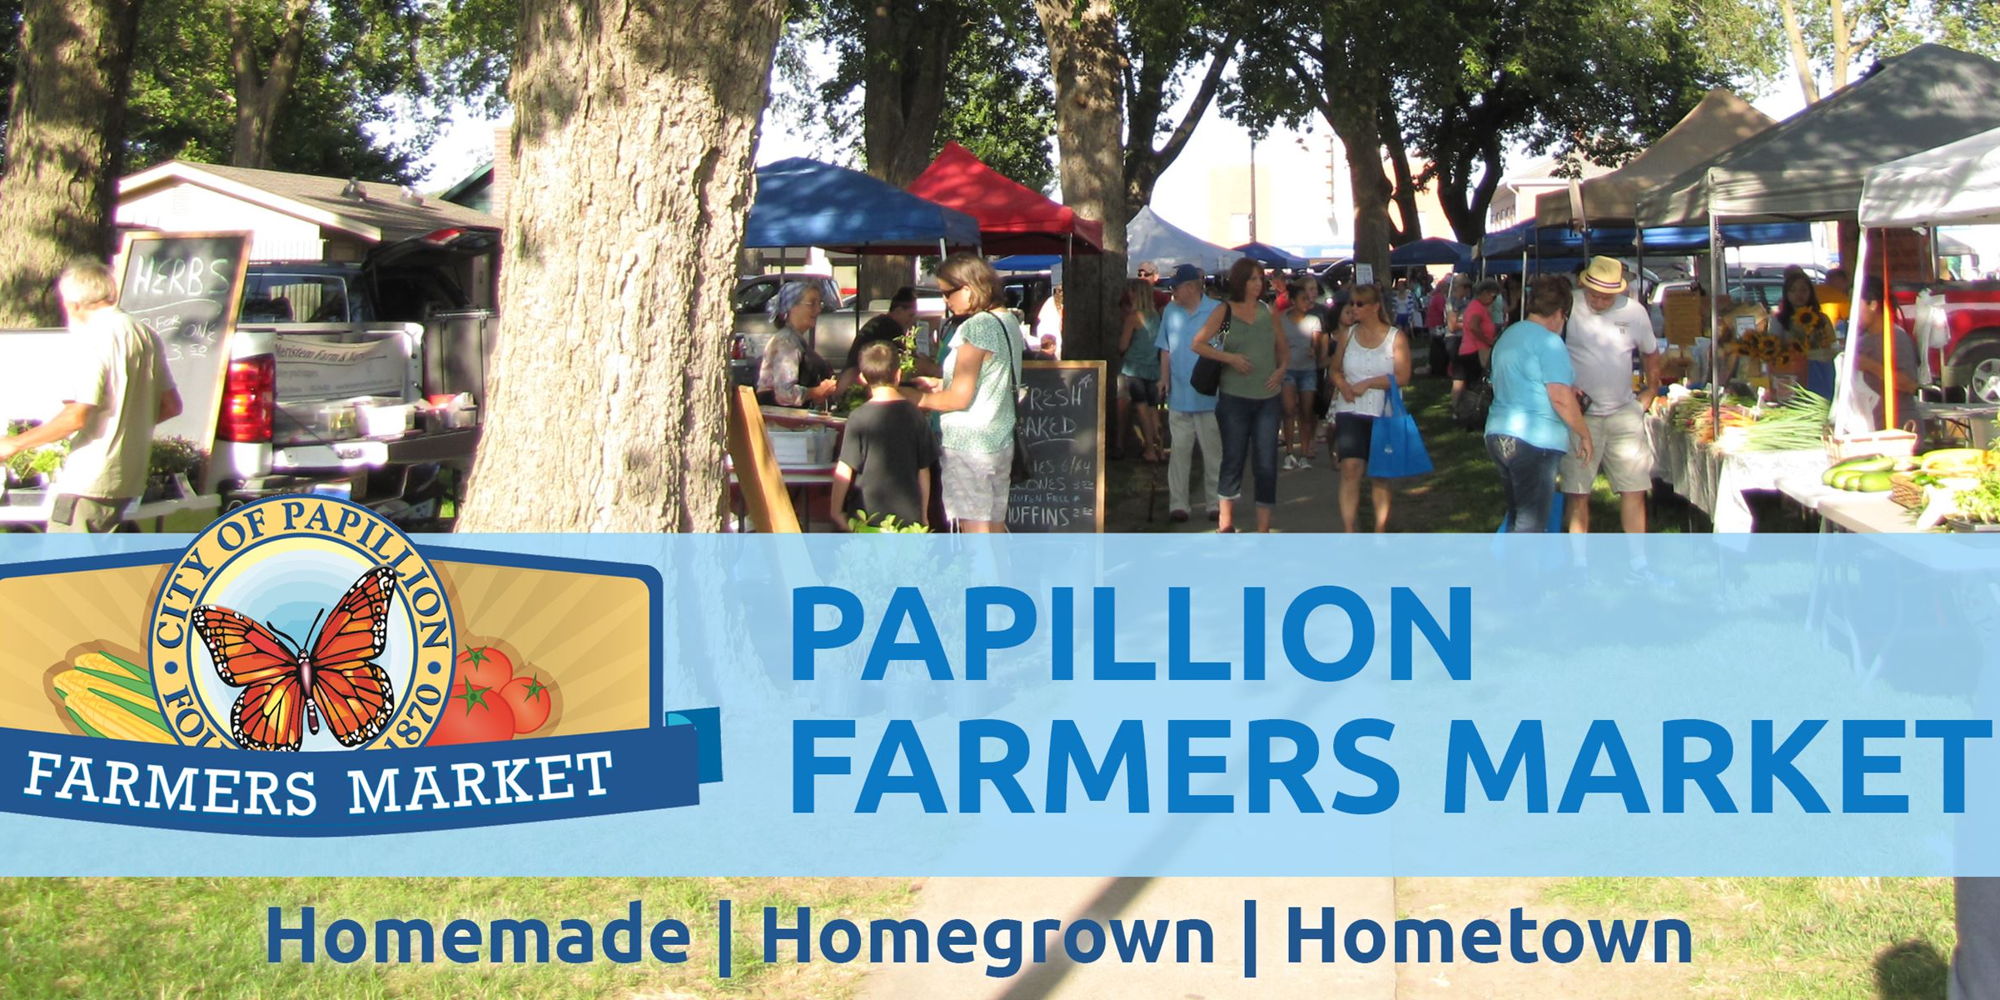 Papillion Farmers Market promotional image